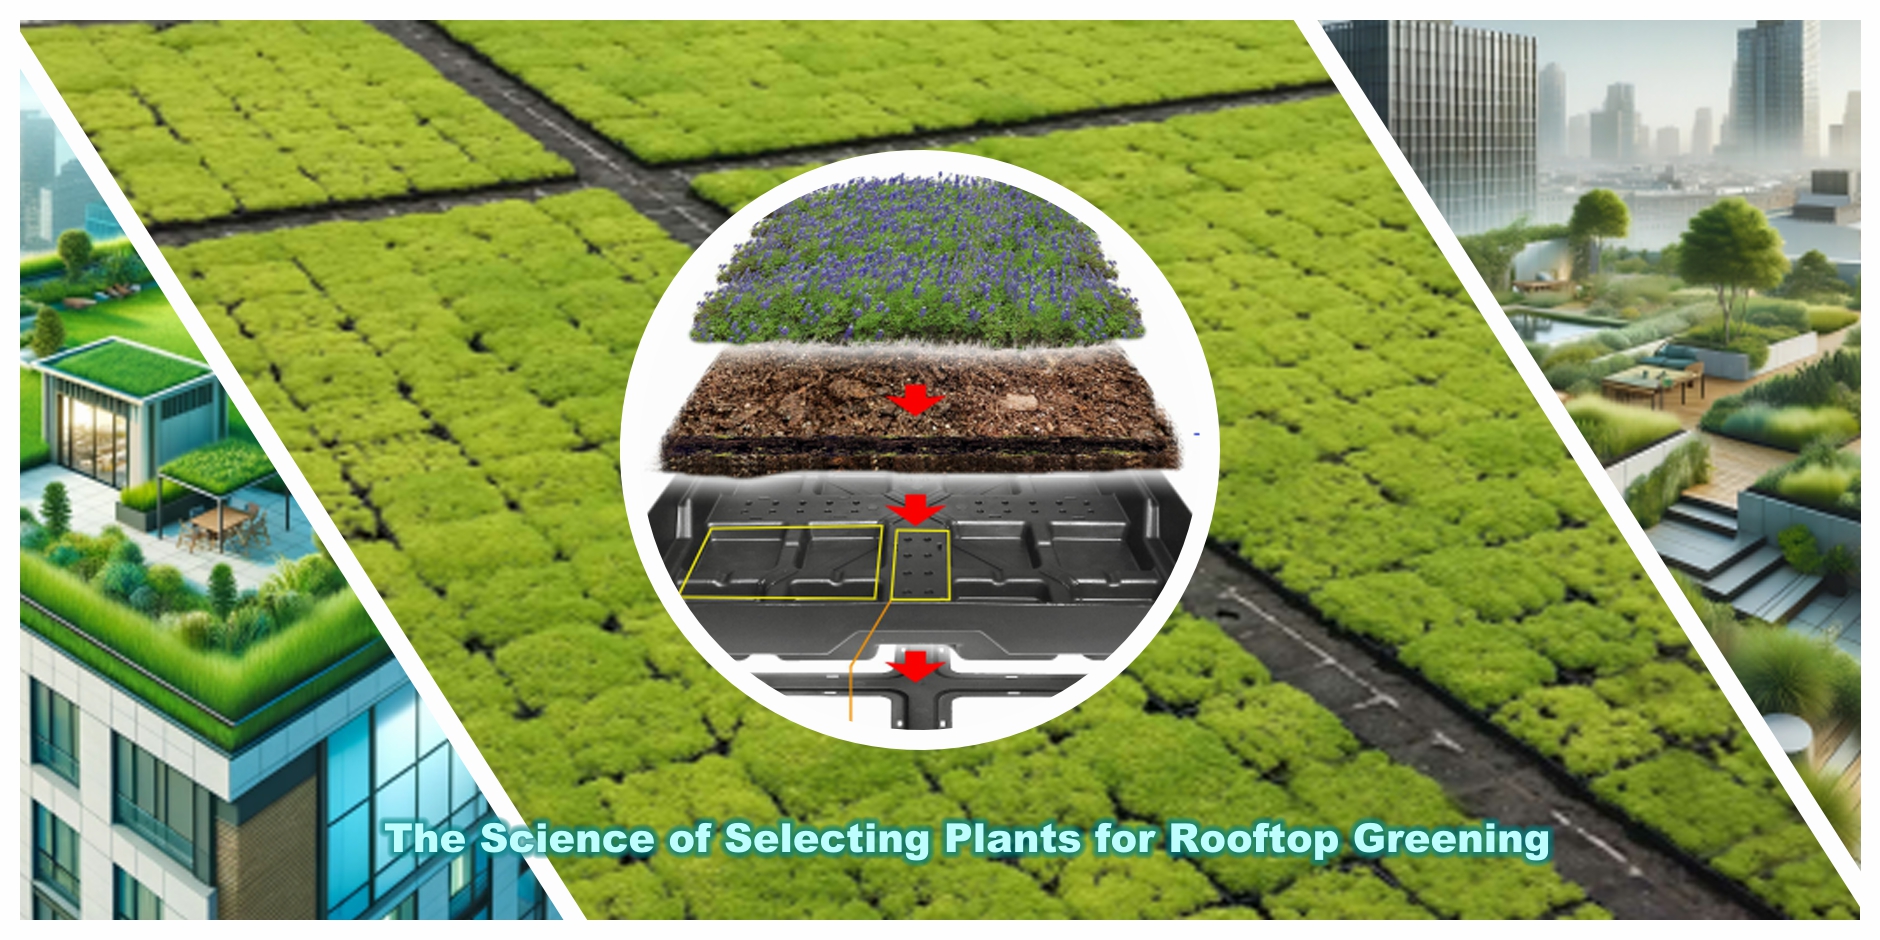 옥상 녹화를 위한 식물 선택 뒤에 숨은 과학을 탐구하고 지속 가능한 도시 생태계 육성에 있어 LEIYUAN의 Green Roof Trays의 효과에 대해 알아보세요.